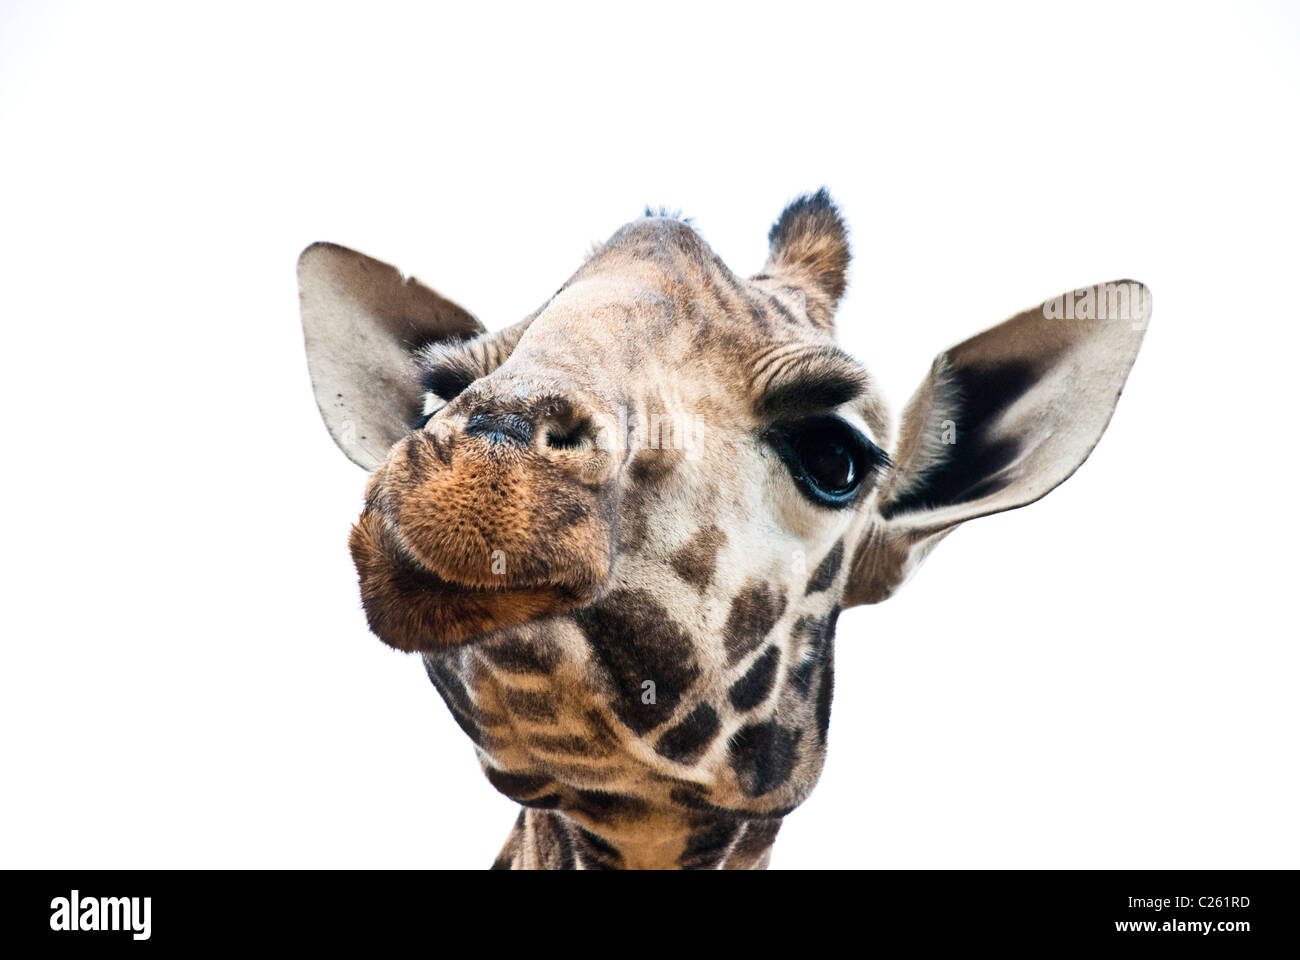 Rothschild Giraffe, Kenya, Africa Stock Photo